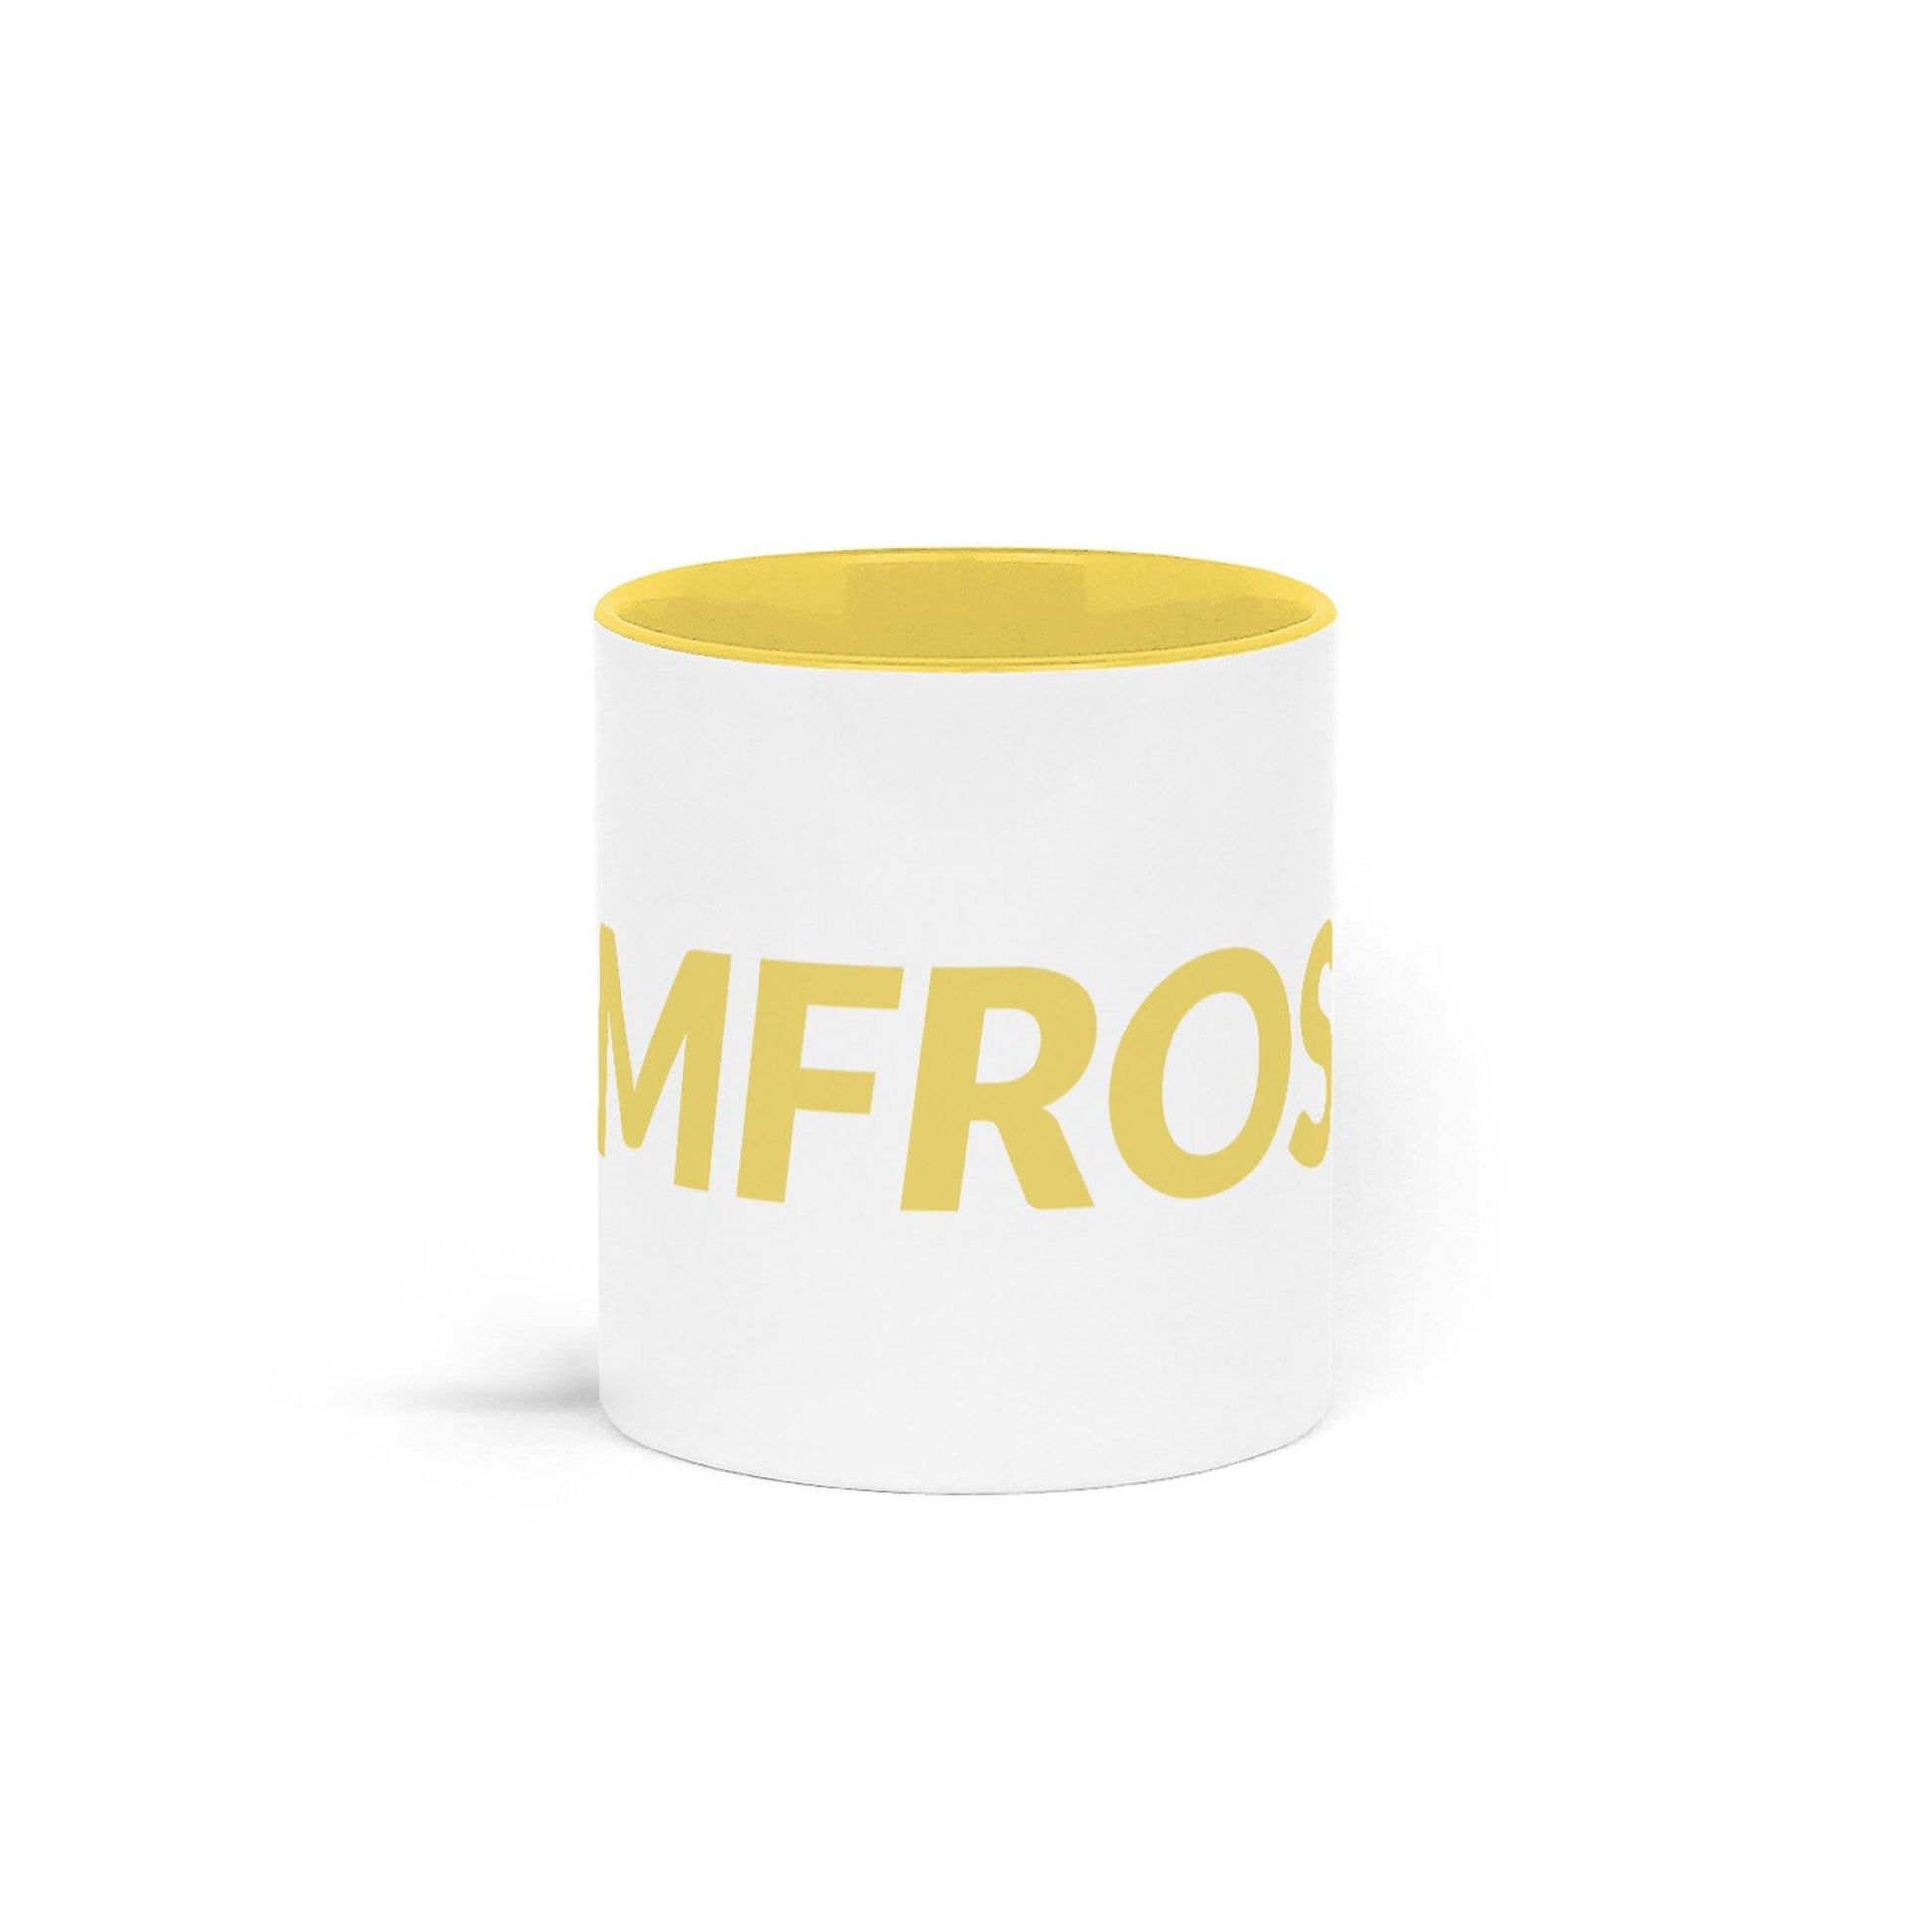 RIMFROST® - Yellow Two Tone Mug 